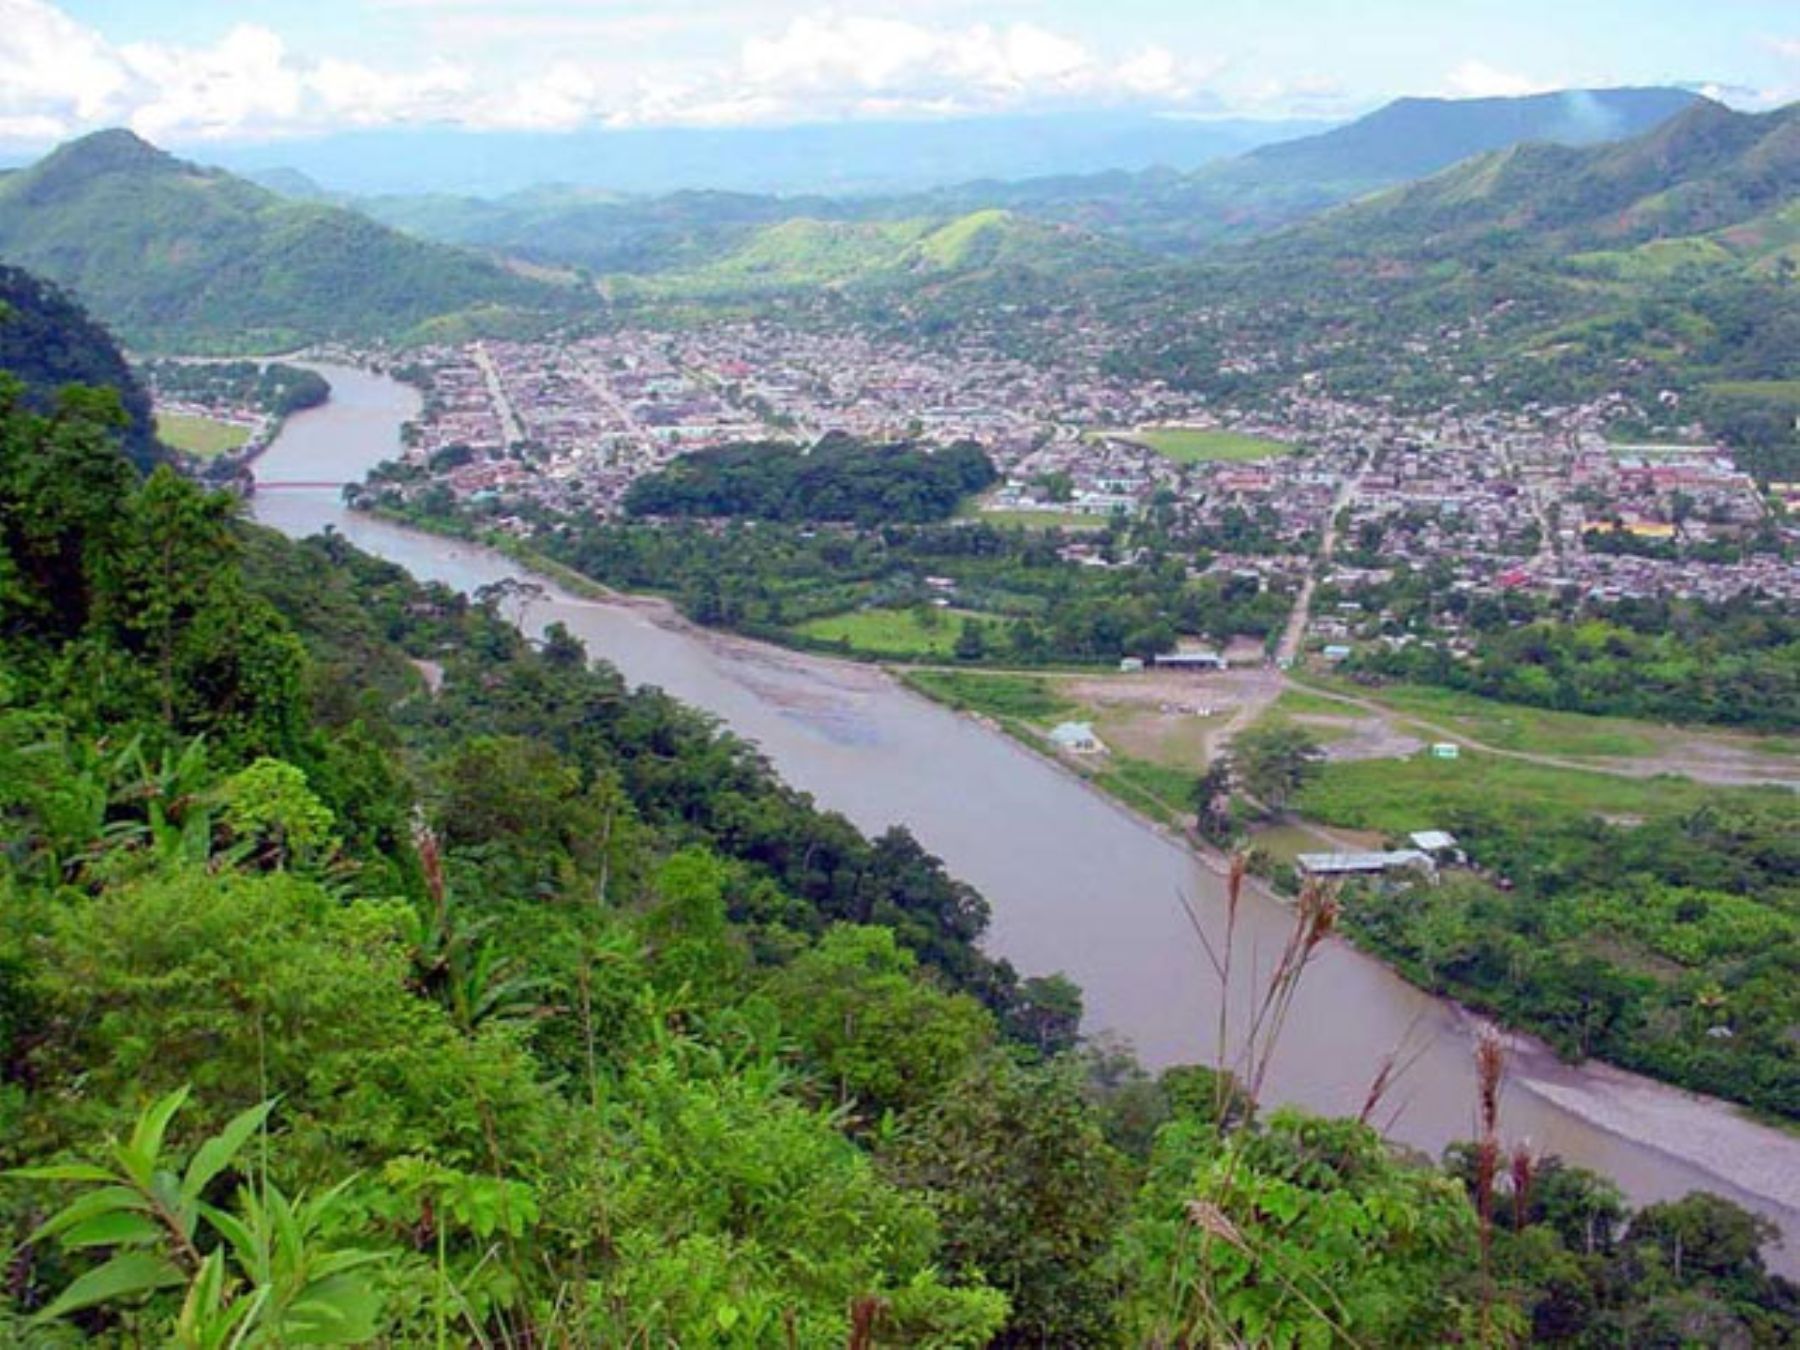 El río Huallaga, que cruza la ciudad de Tingo María, incrementó su caudal debido a las lluvias intensas.INTERNET/Medios